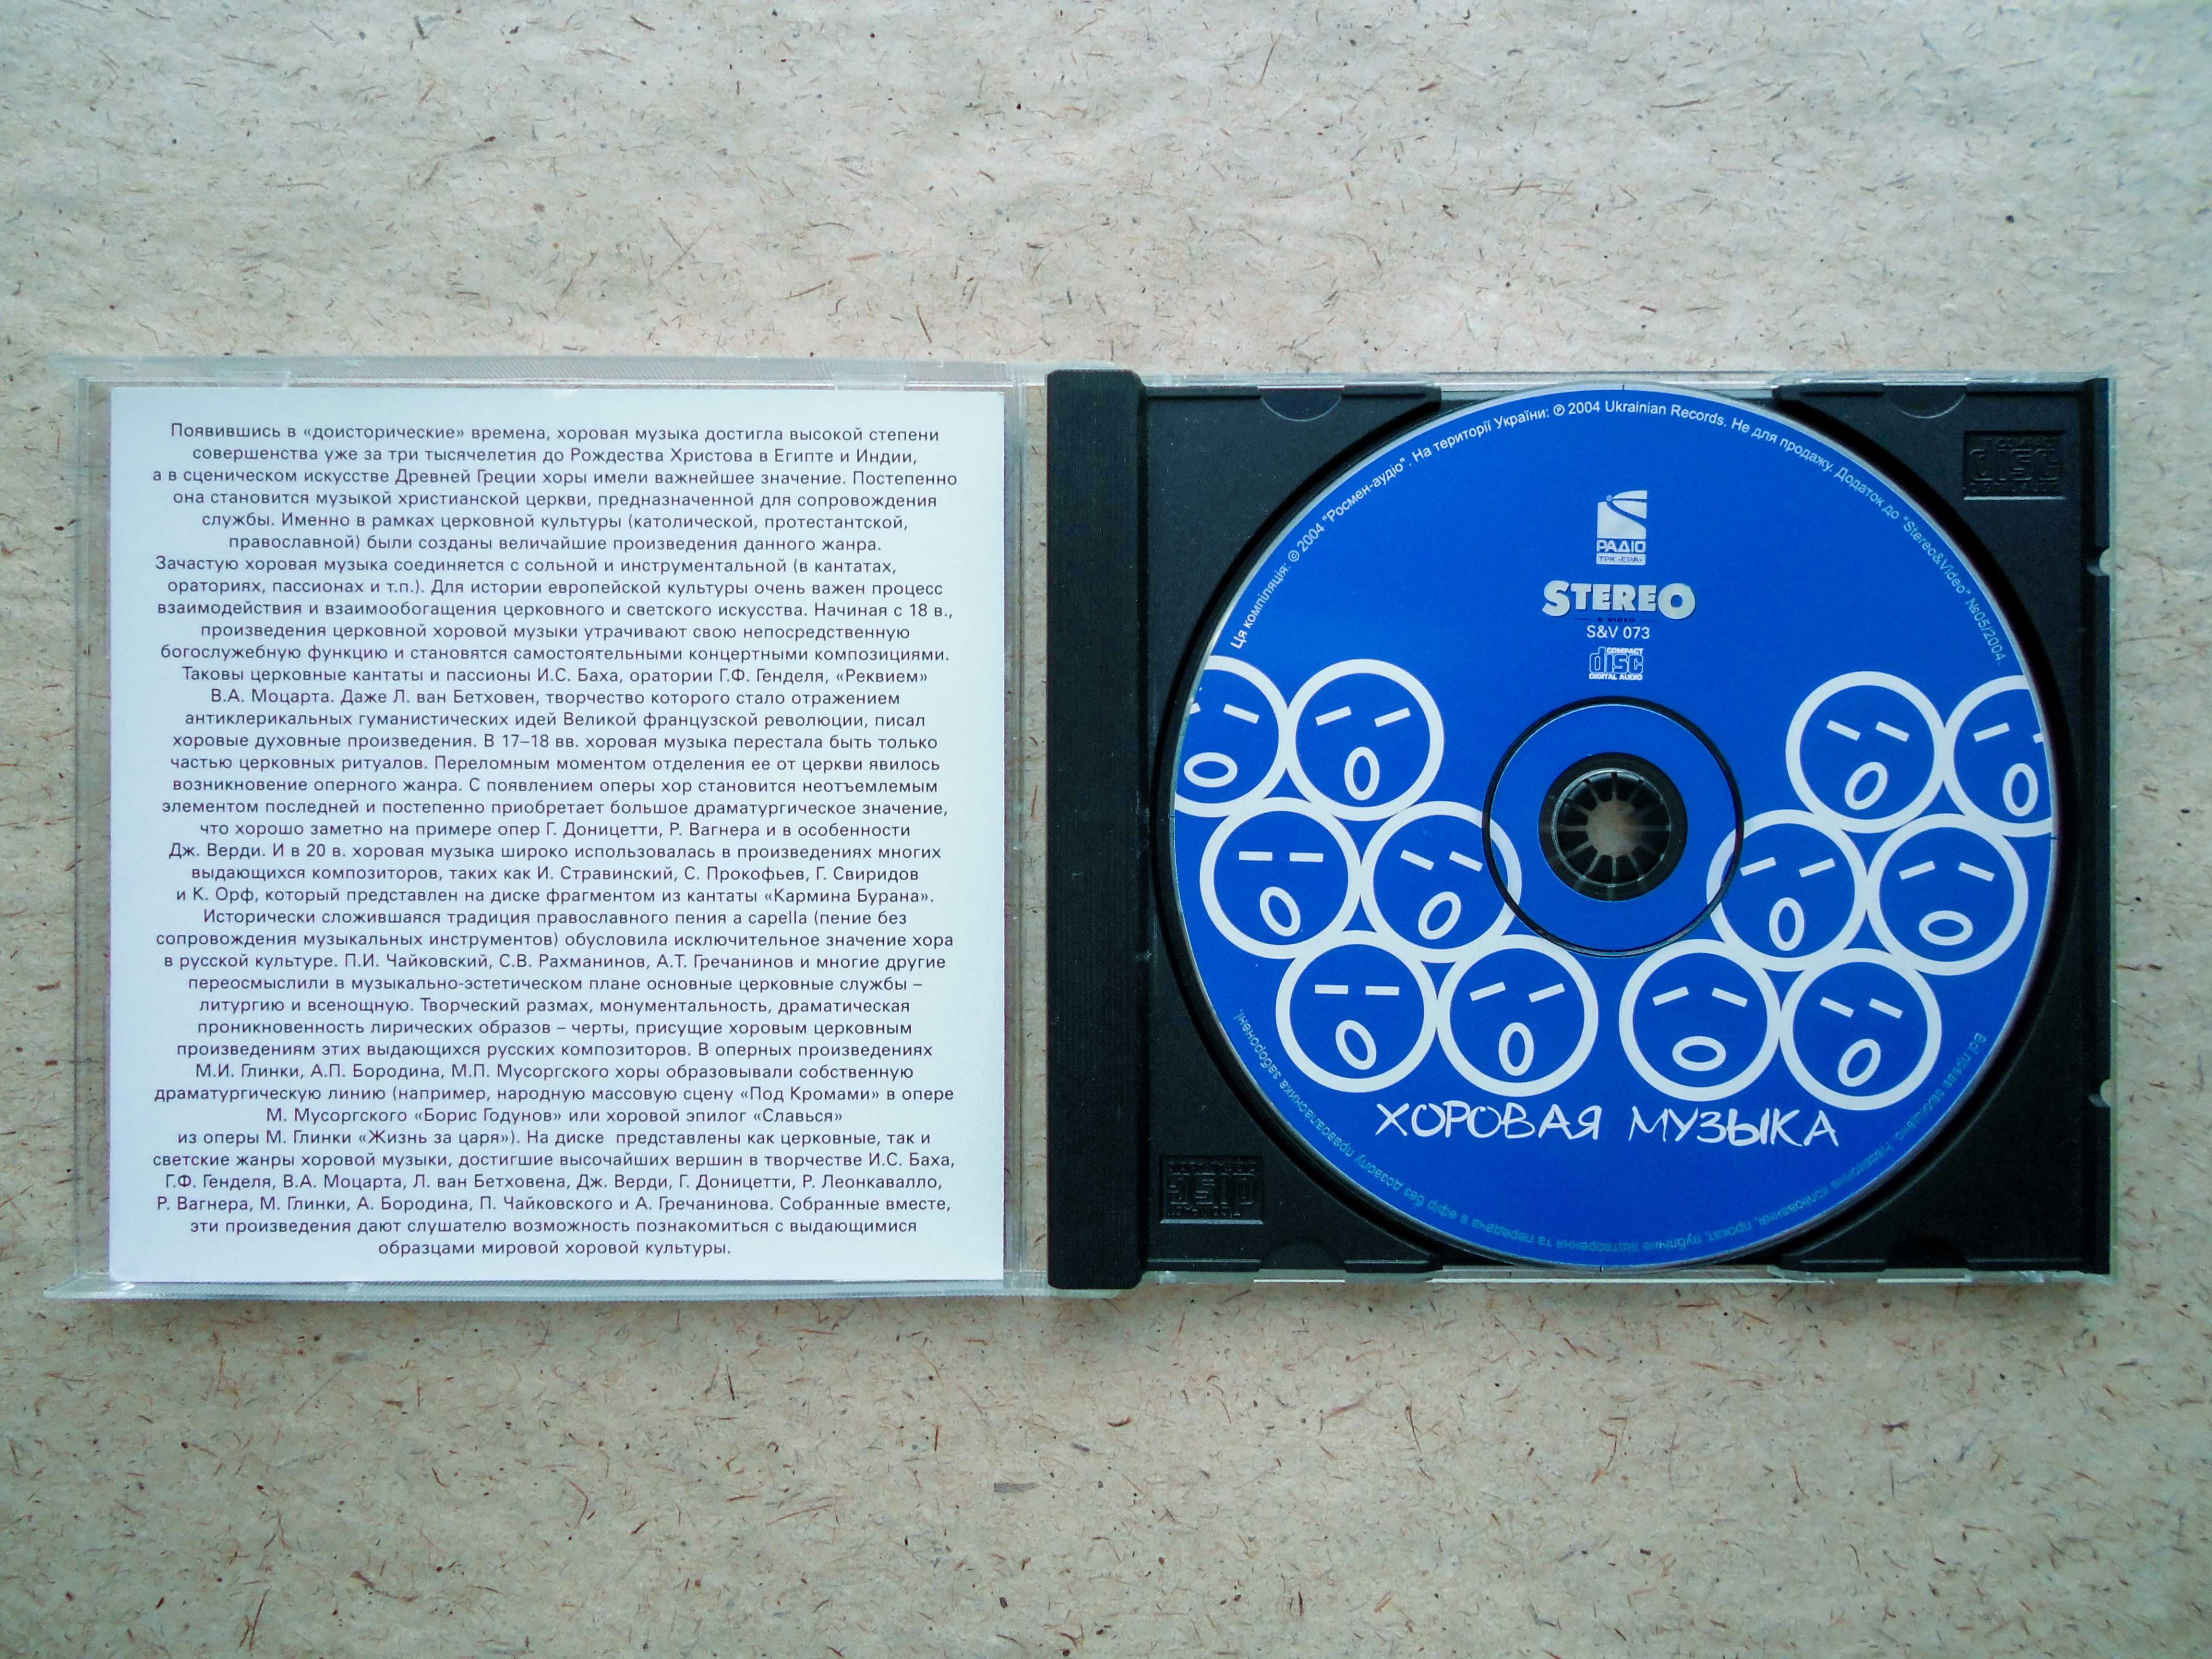 CD диск Хоровая музыка журнал Stereo & Video